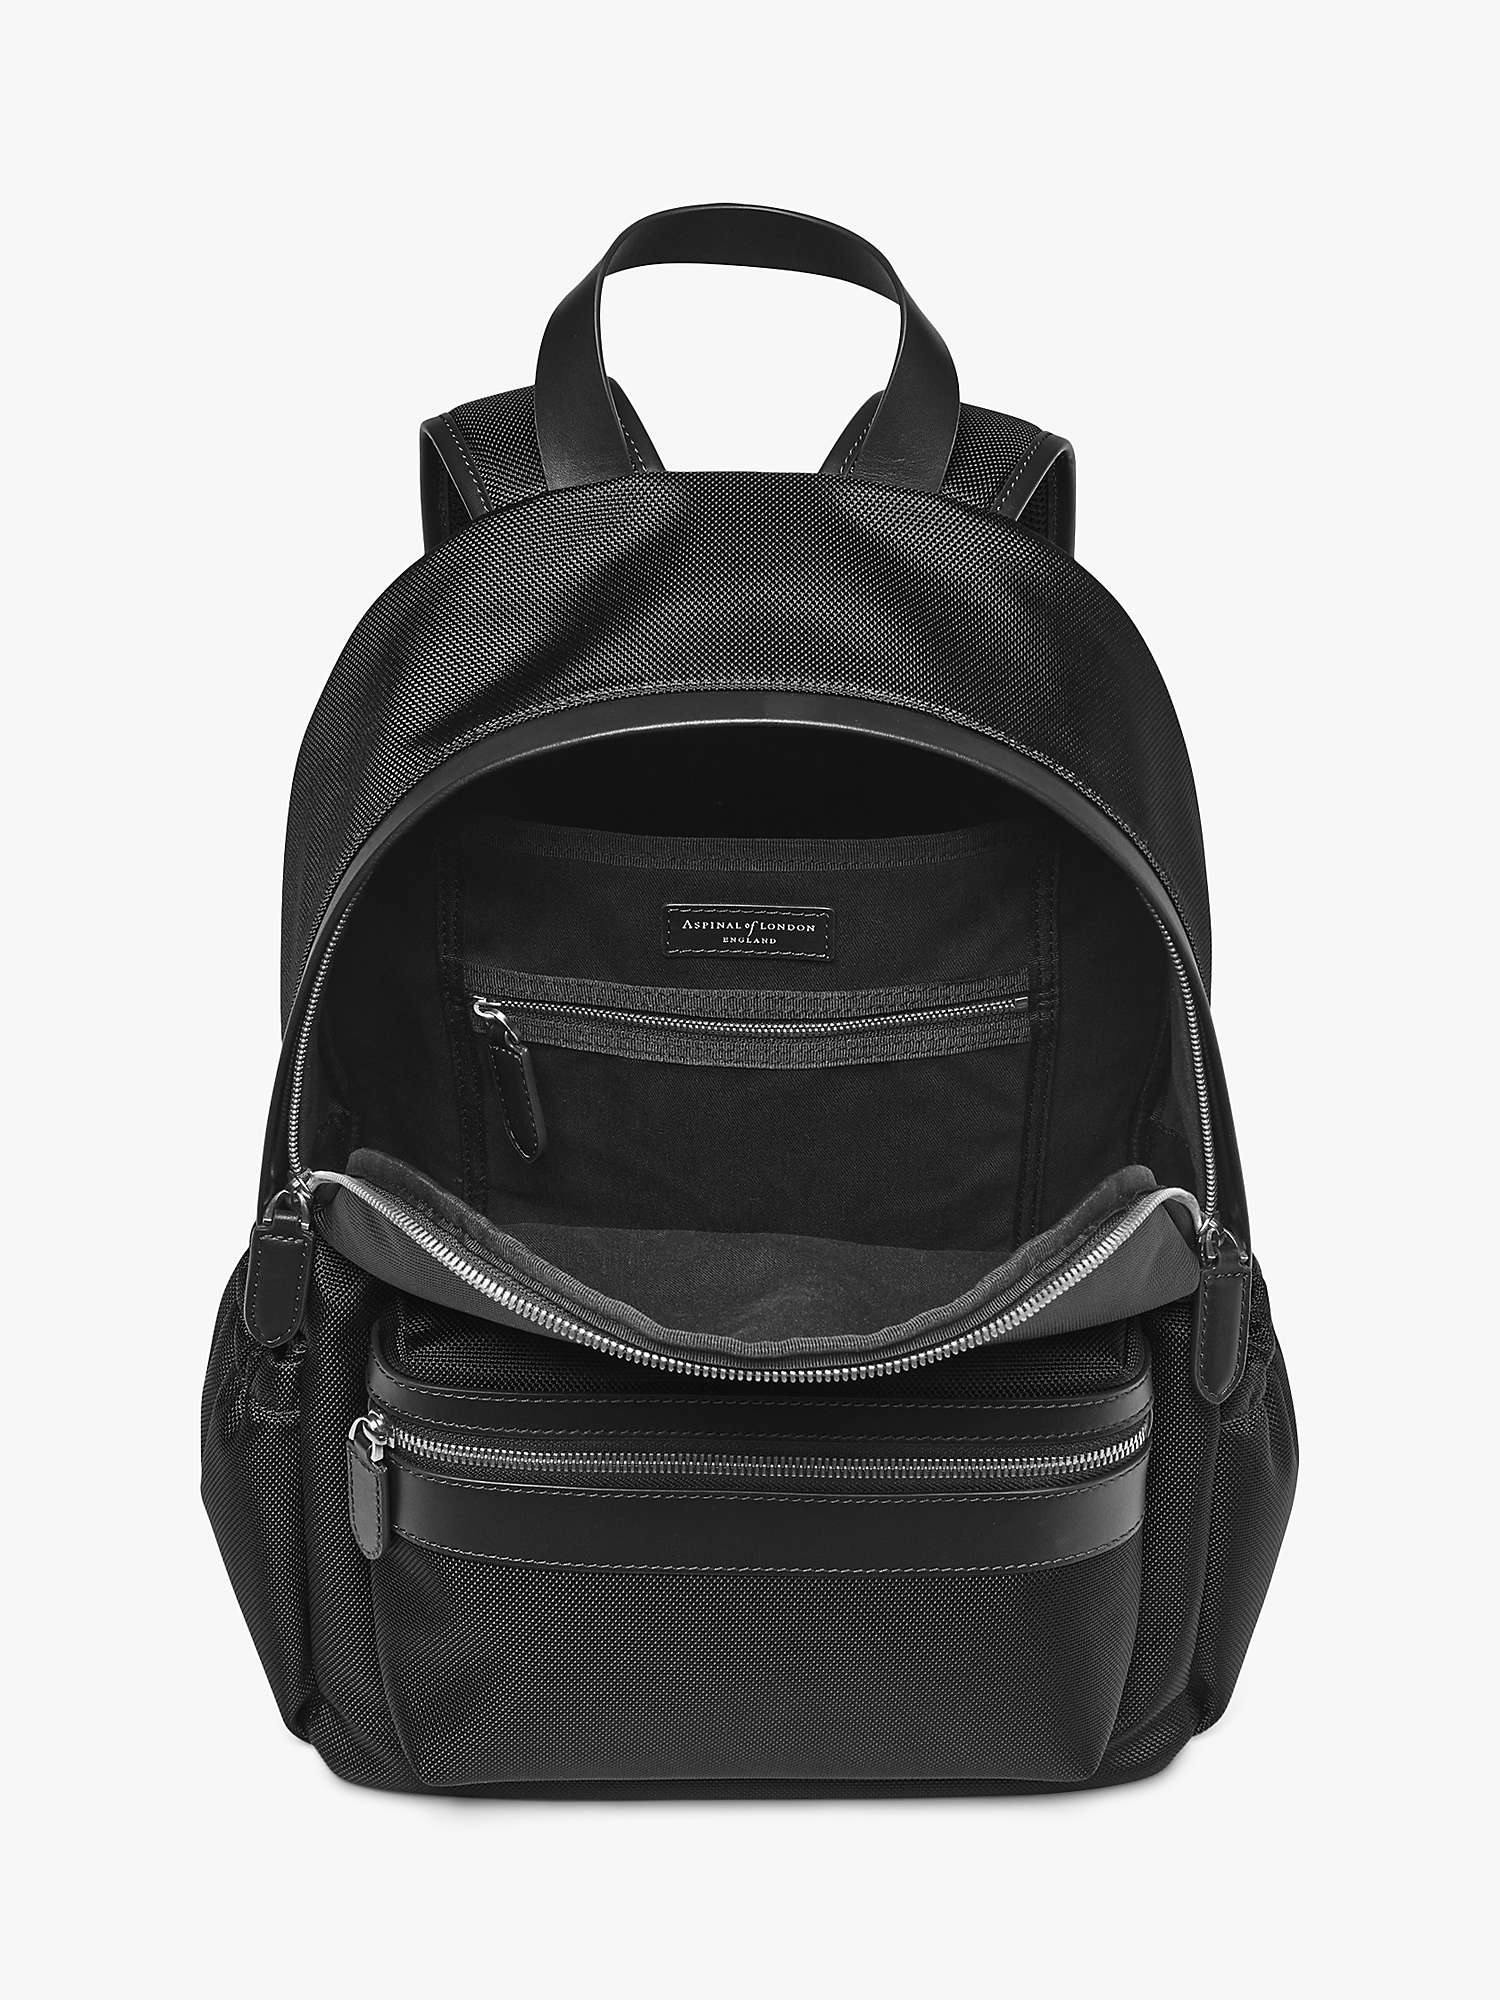 Buy Aspinal of London Commuter Backpack, Black Online at johnlewis.com